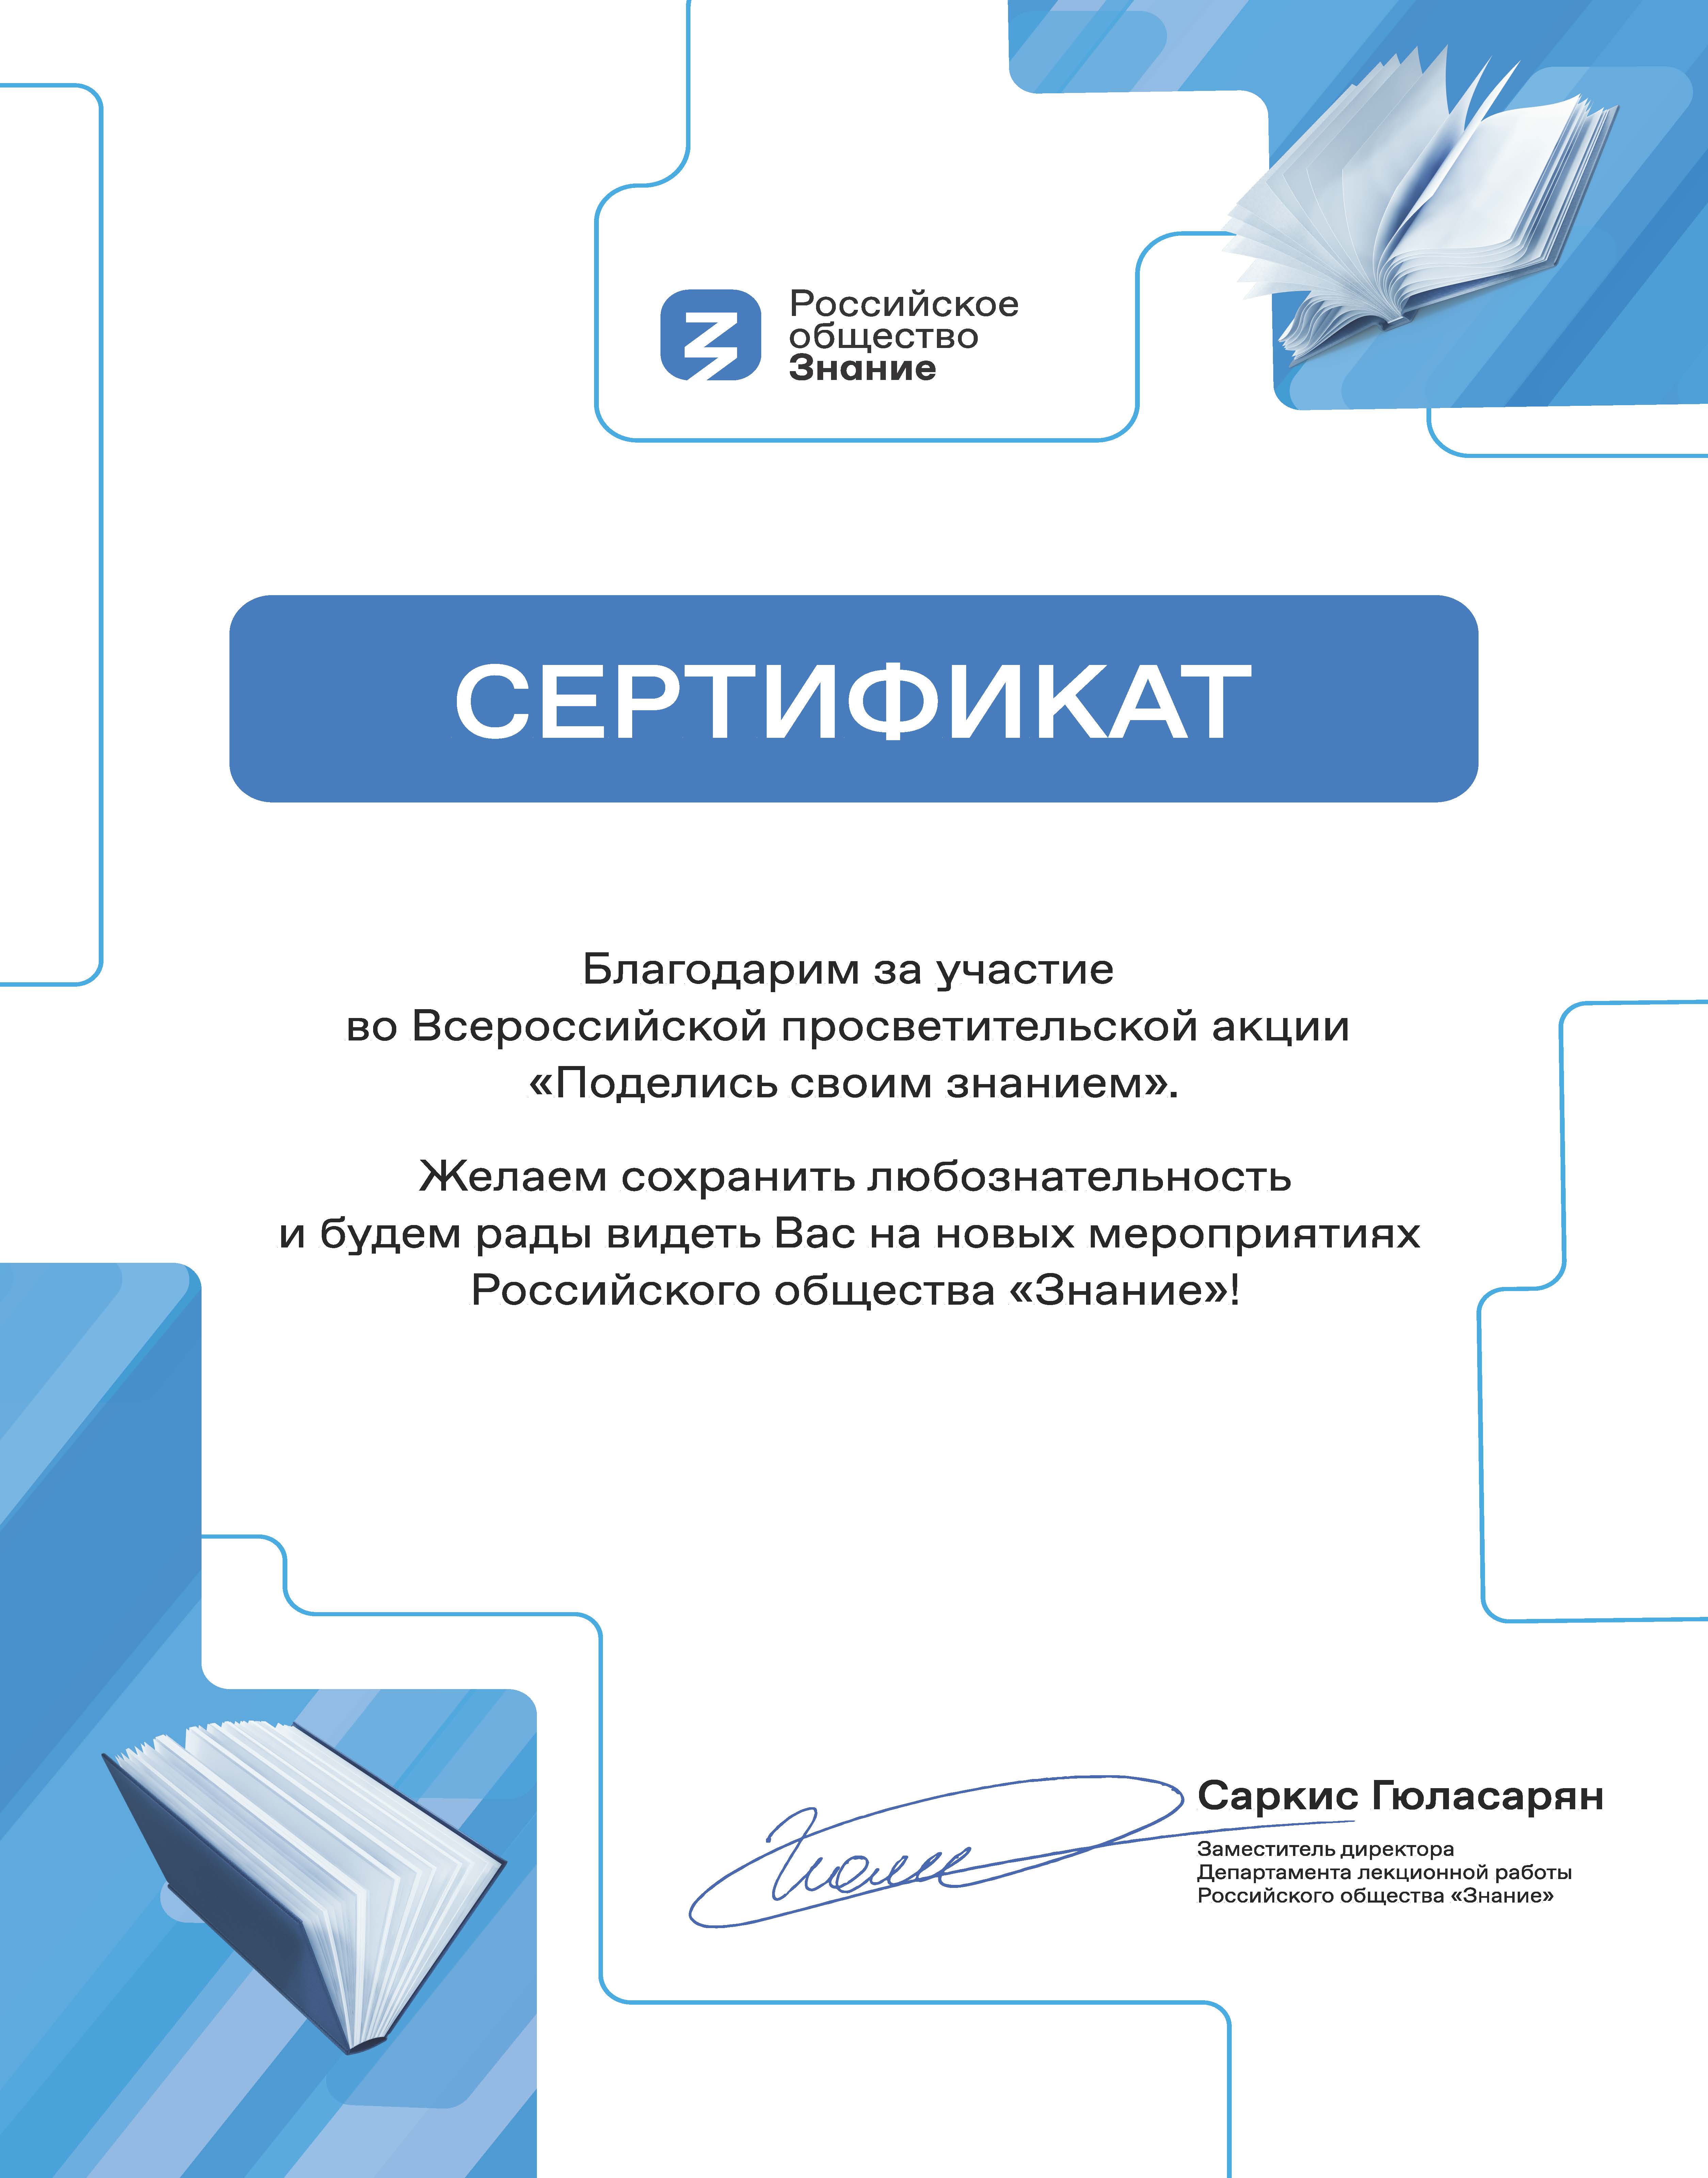 Сертификат ПСЗ